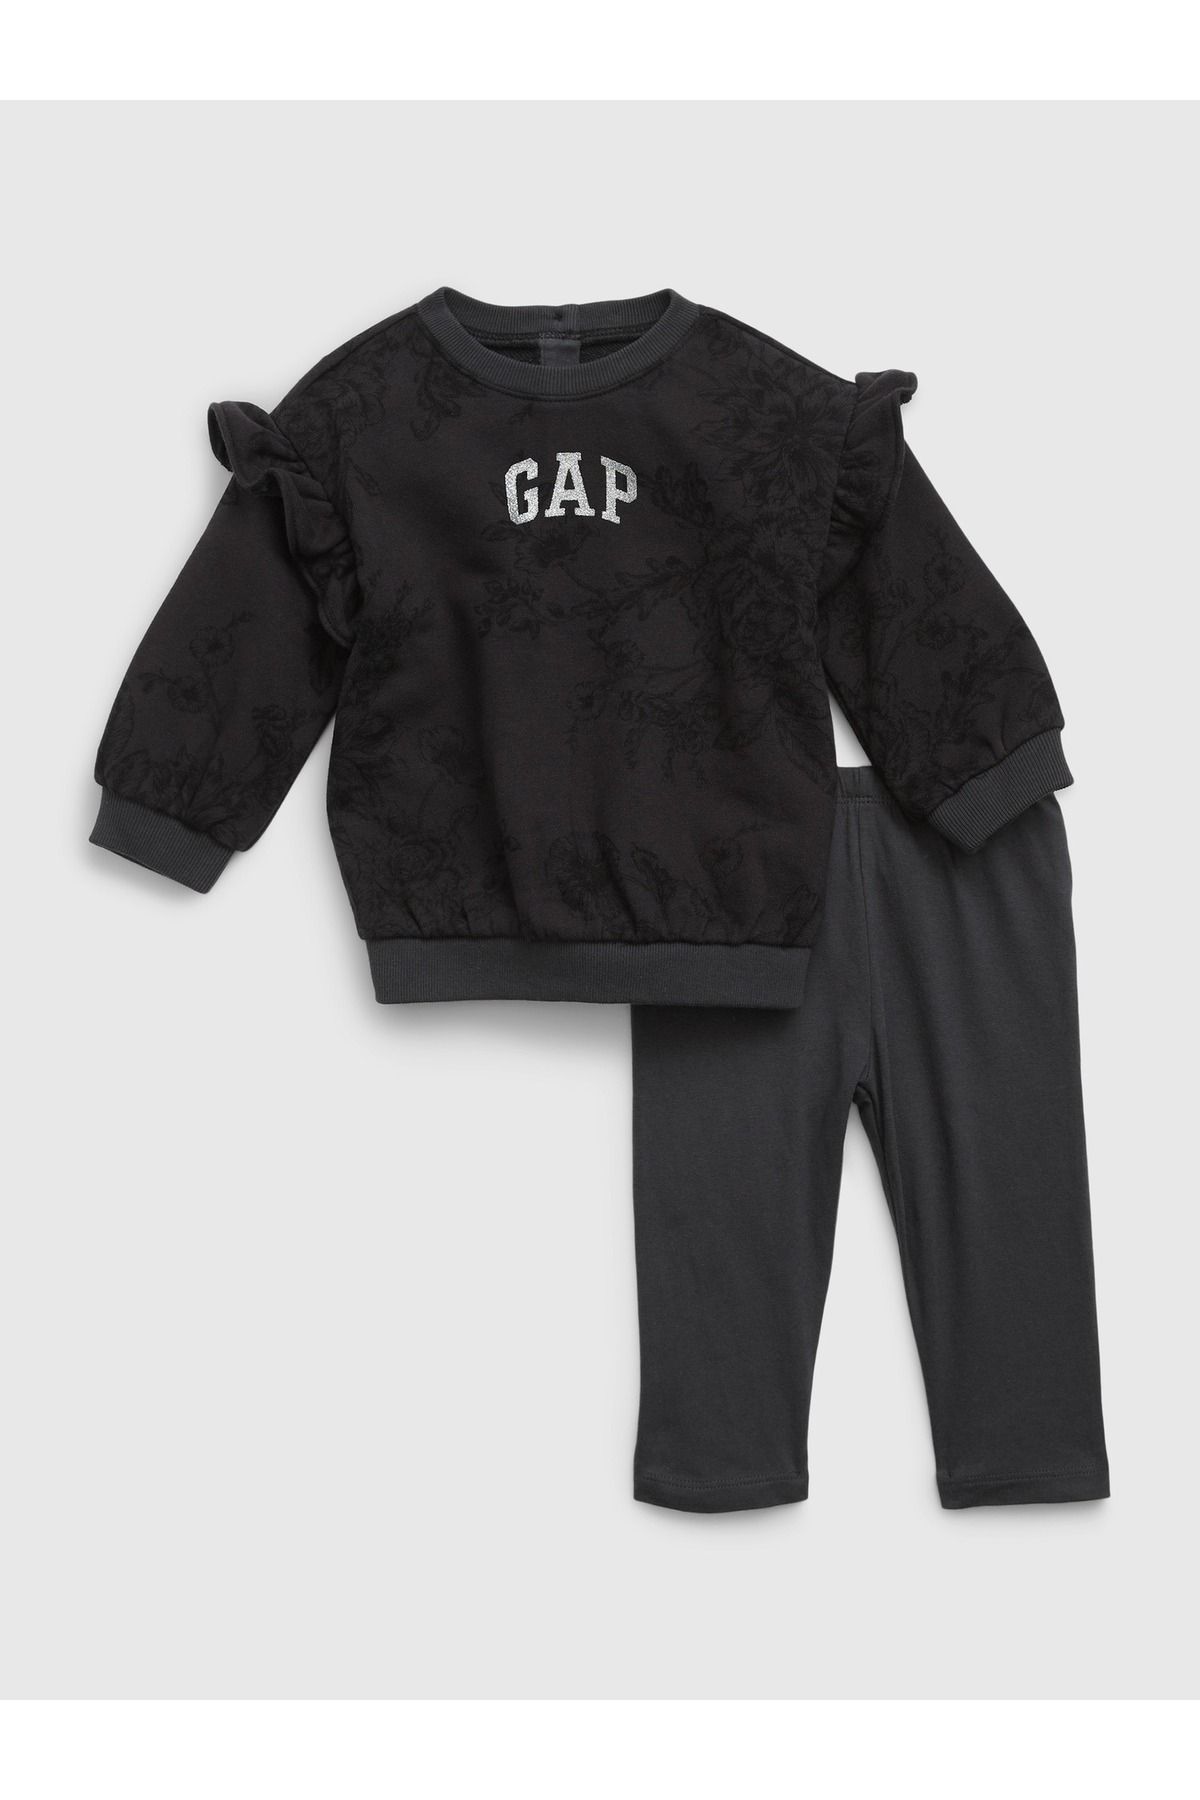 GAP Kız Bebek Siyah Gap Logo Çiçek Desenli Sweatshirt Set